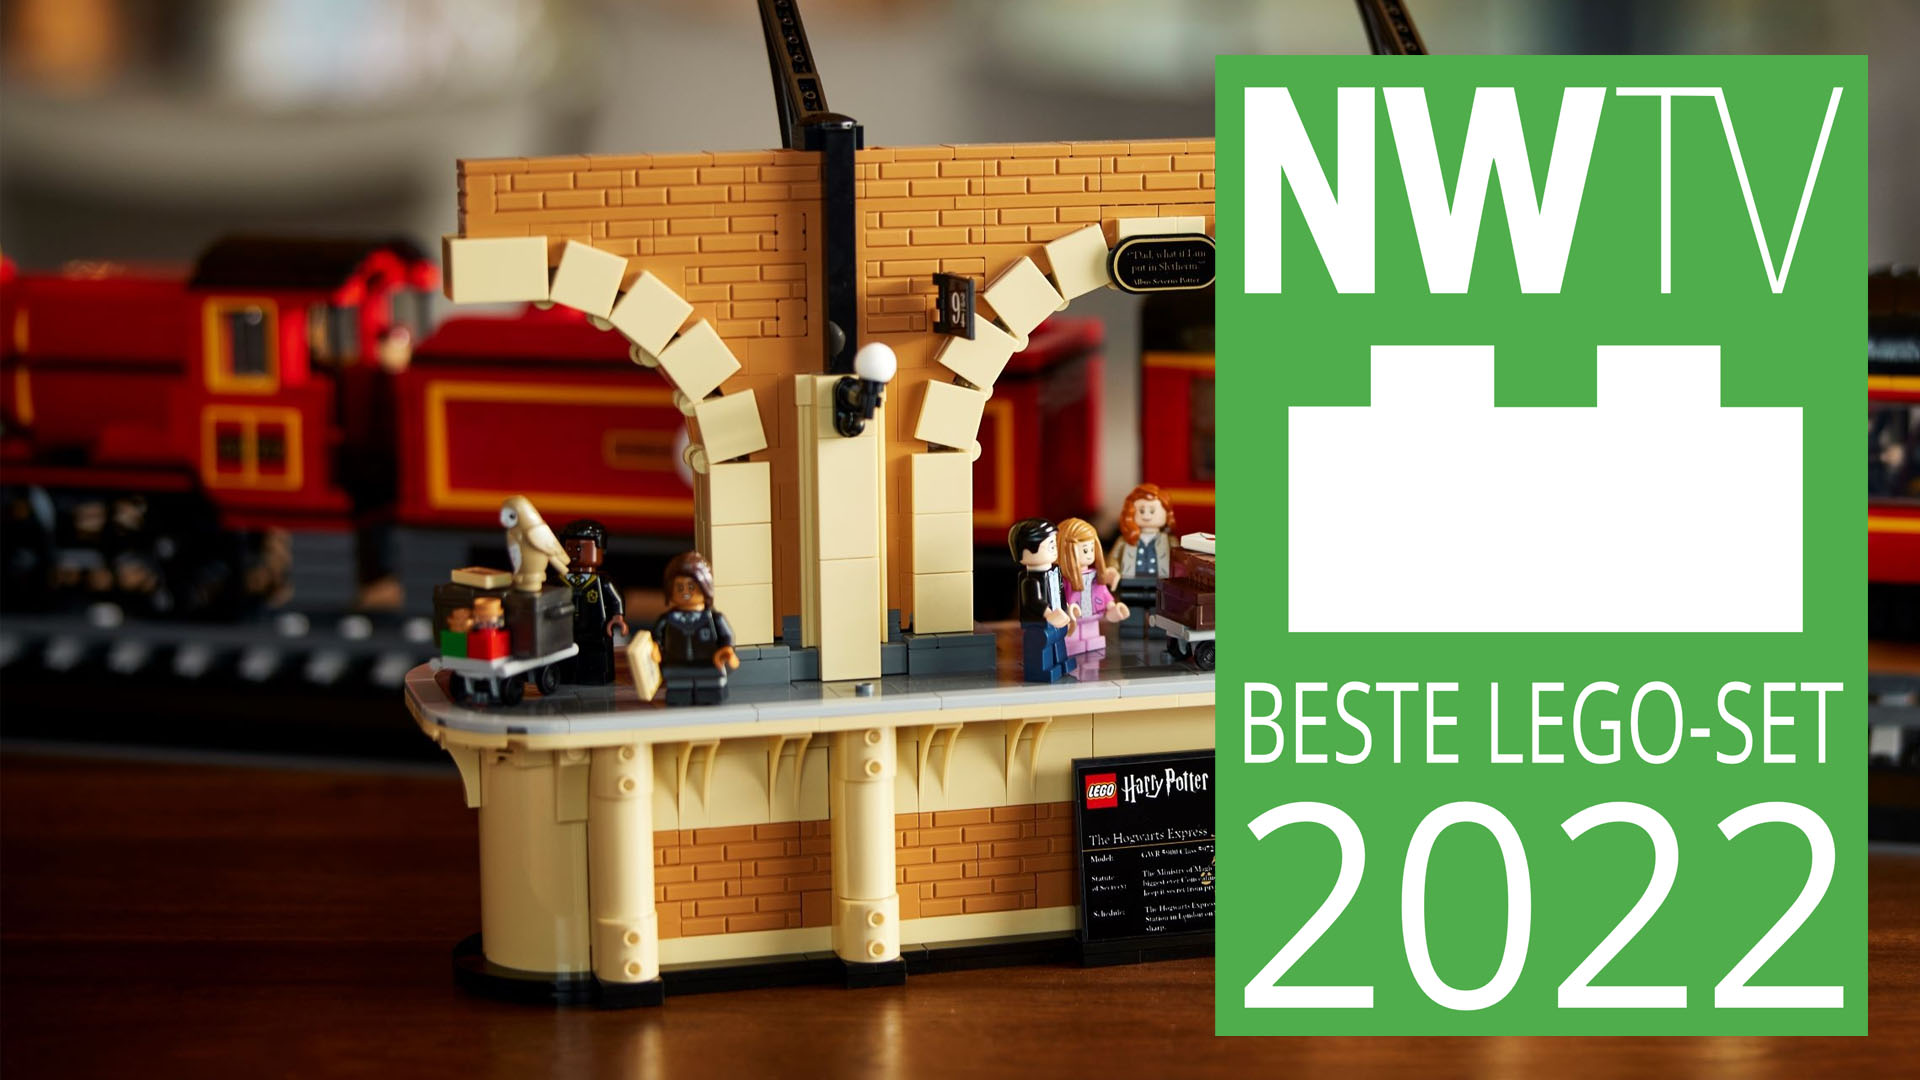 NWTV-Awards 2022: De Zweinstein Express™ – Verzameleditie is de beste LEGO-set van 2022